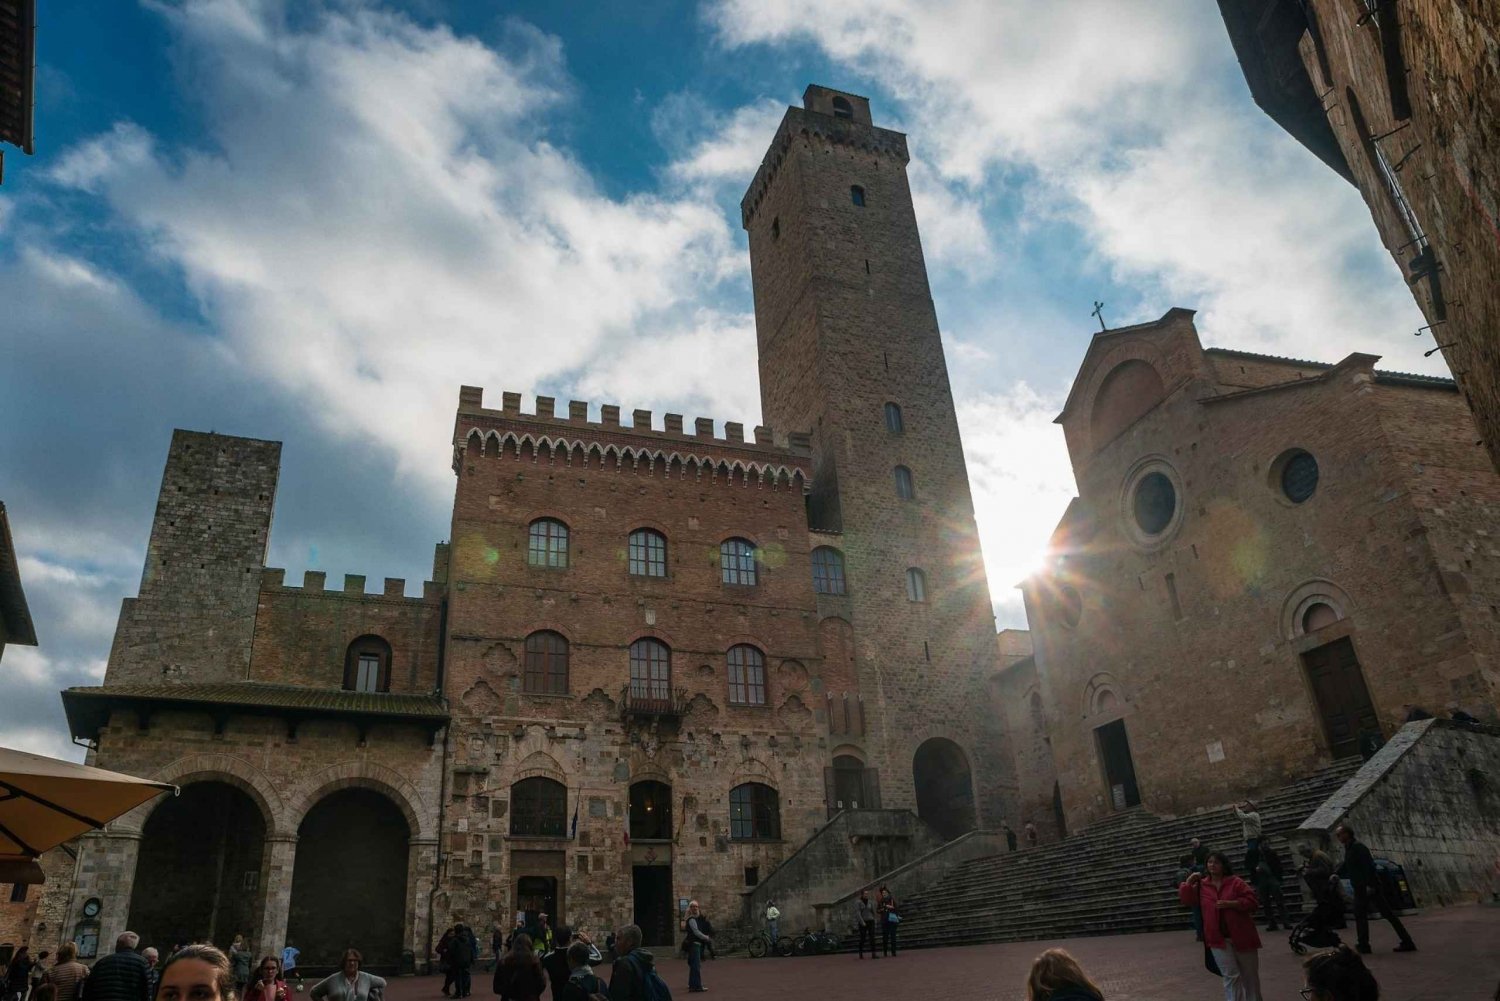 Full-Day Excursion to Siena, San Gimignano & Pisa